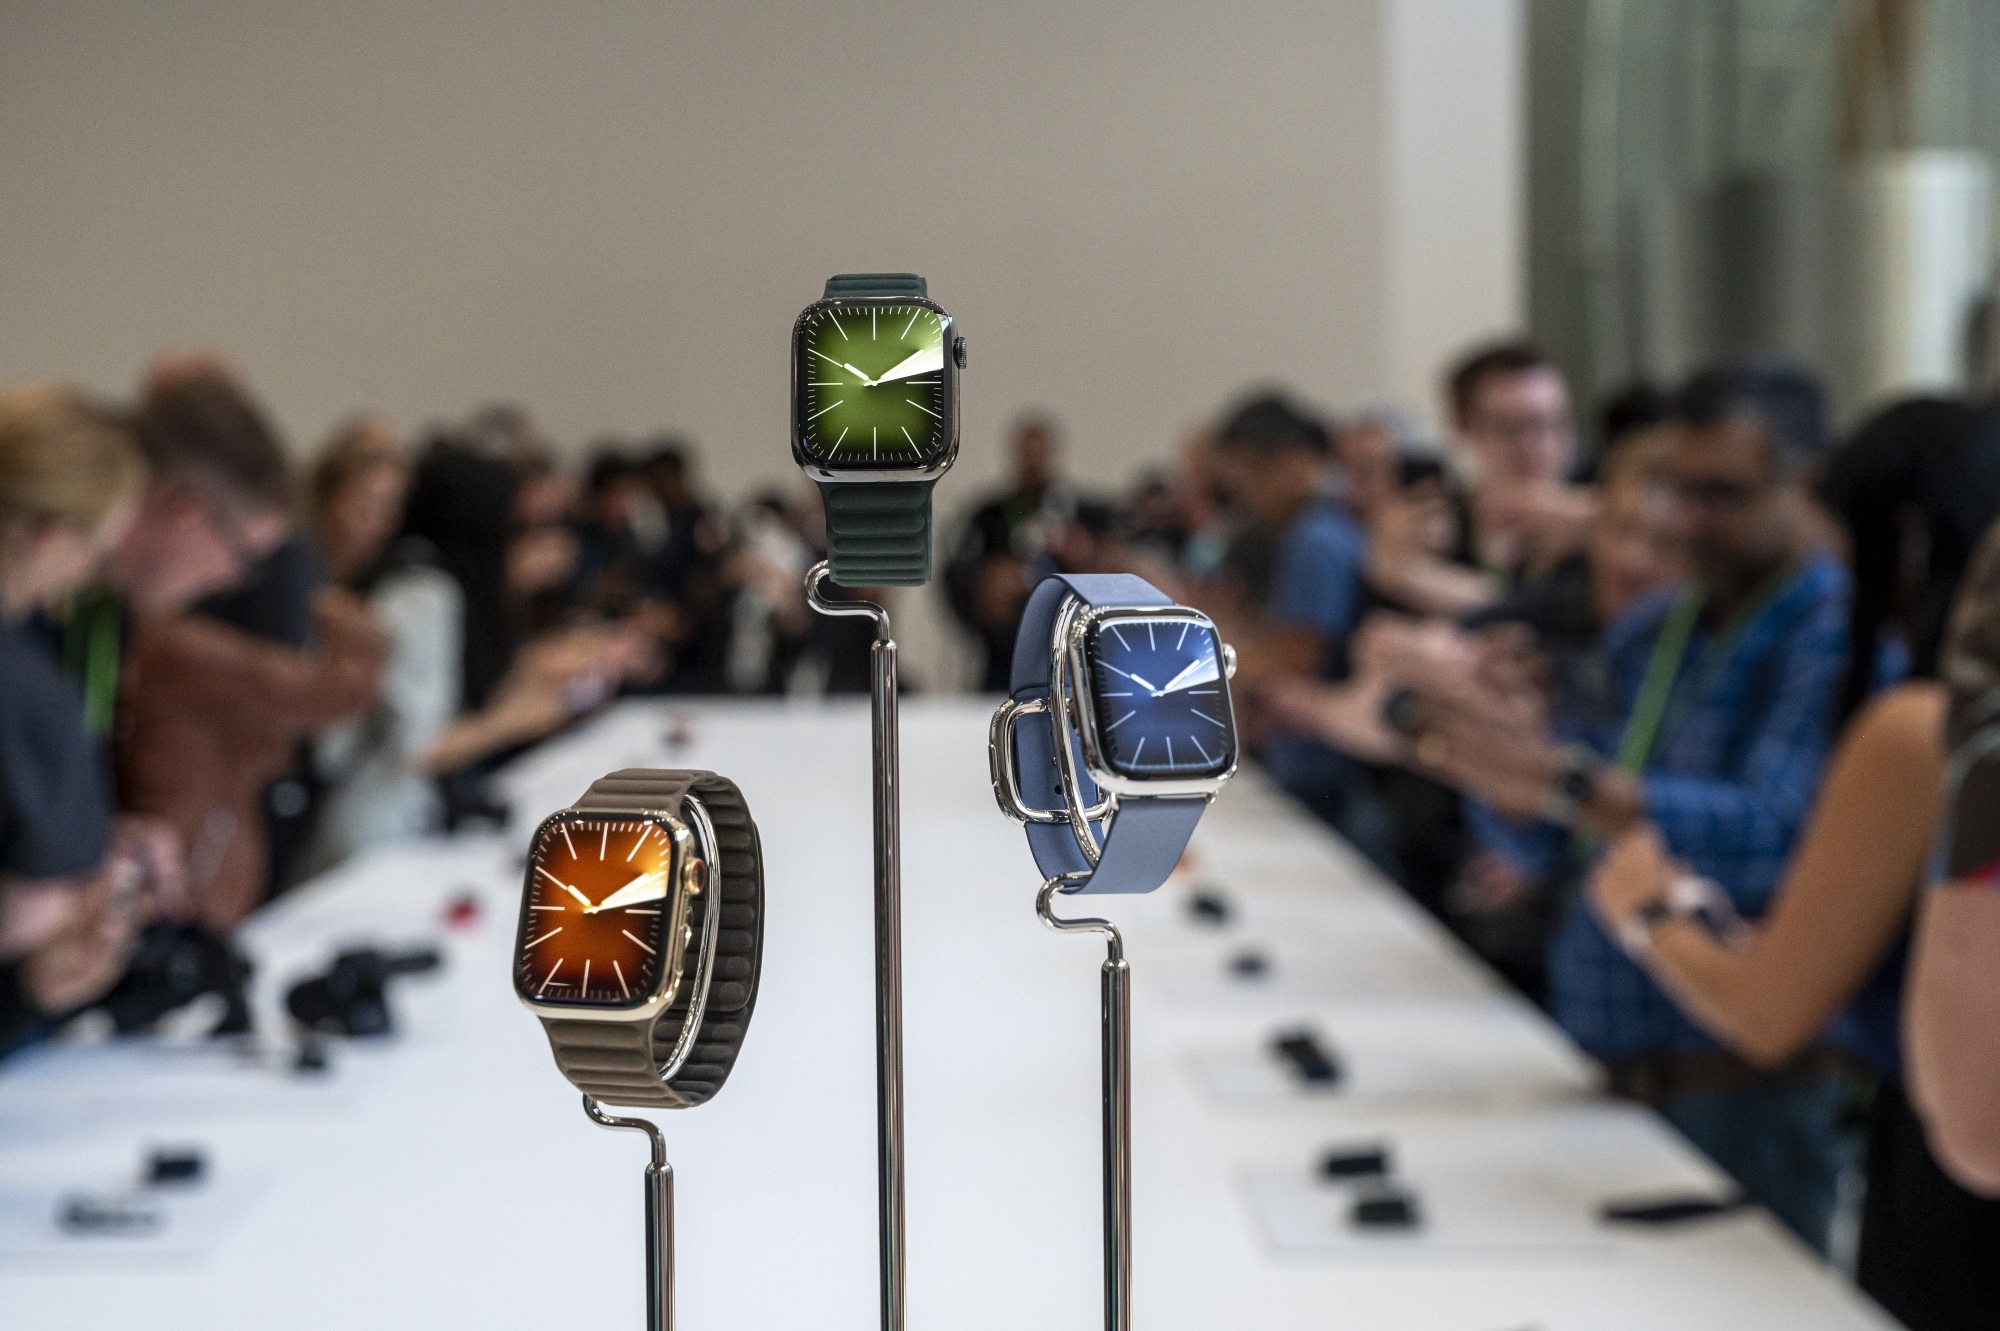 Los relojes Garmin consiguen lo que no ha logrado el Apple Watch:  incorporan la medición de glucosa en sangre